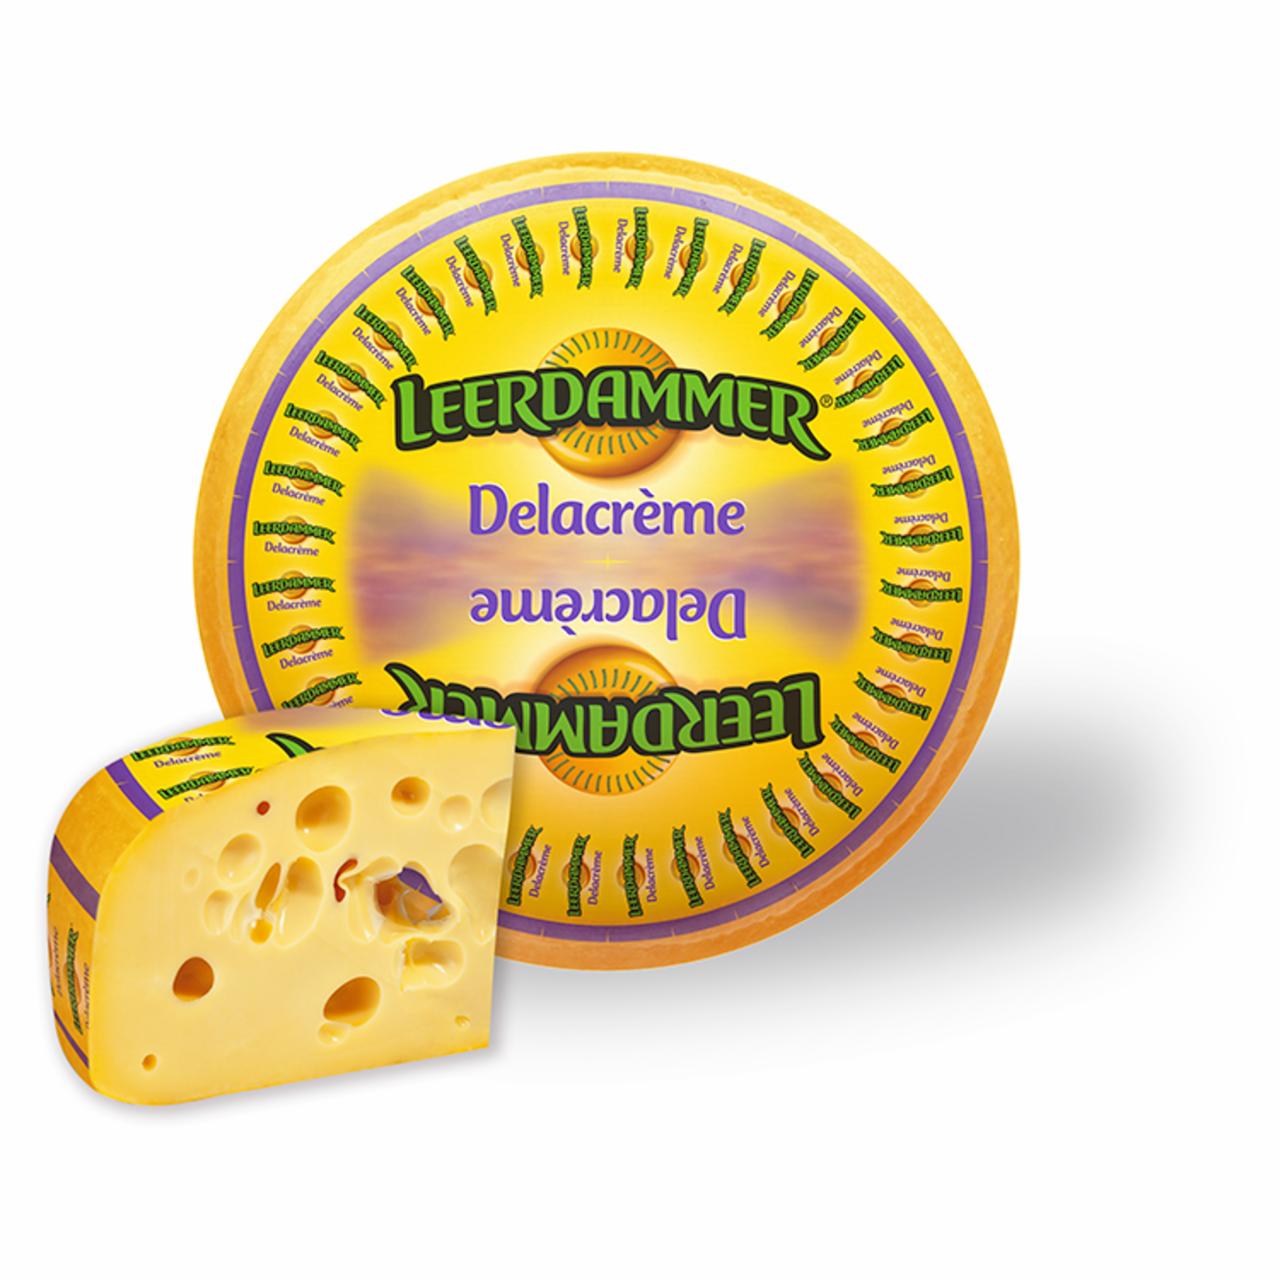 Képek - Leerdammer Delacrème zsíros, félkemény sajt